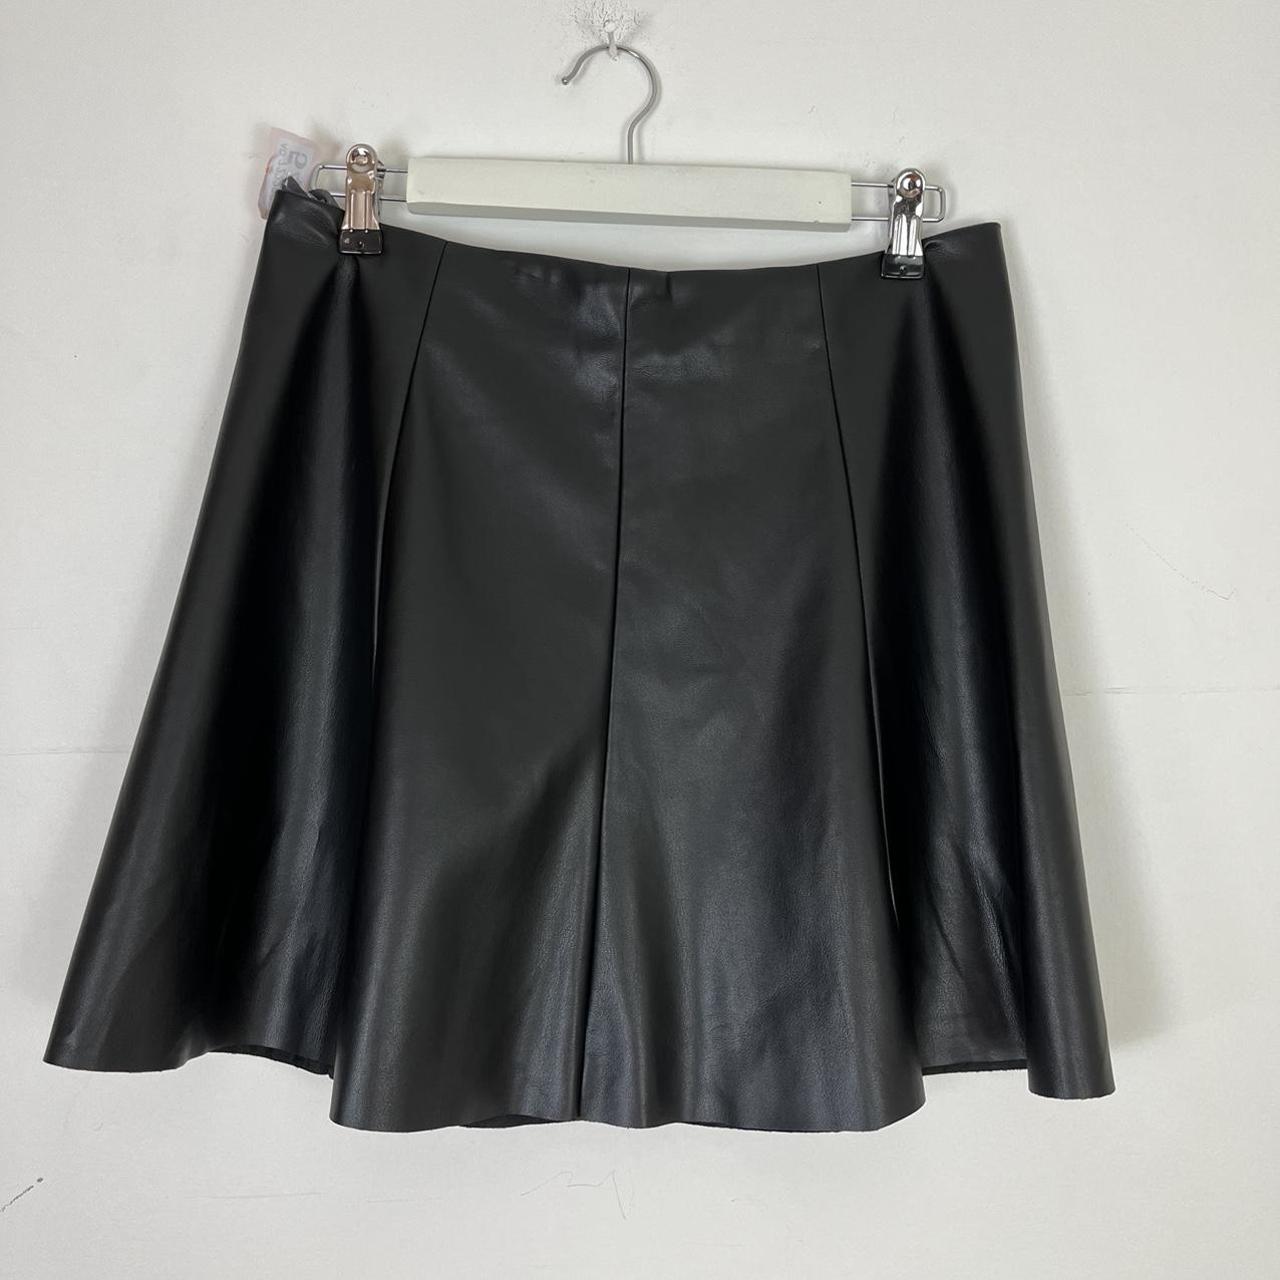 O545 Black pleather pleated mini skirt Size 14... - Depop